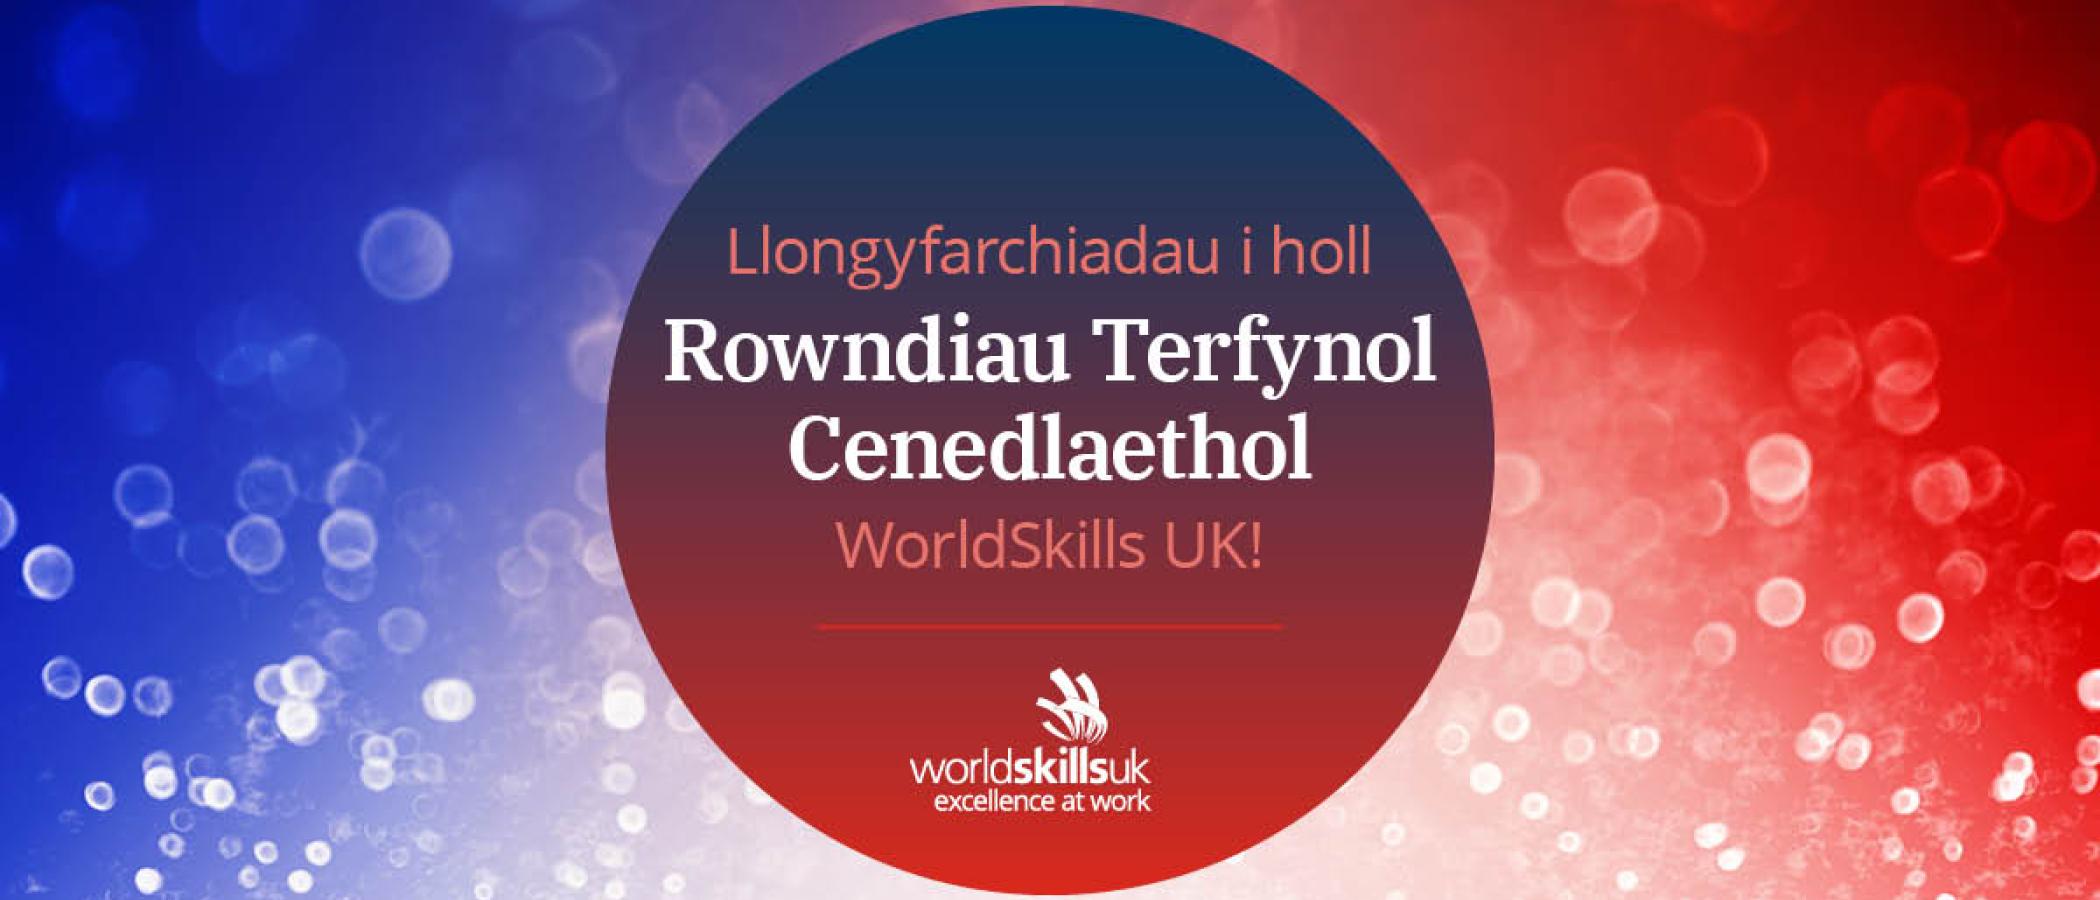 Graffeg sy'n dweud "Llongyfarchiadau i holl Rowndiau Terfynol Cenedlaethol WorldSkills UK!"